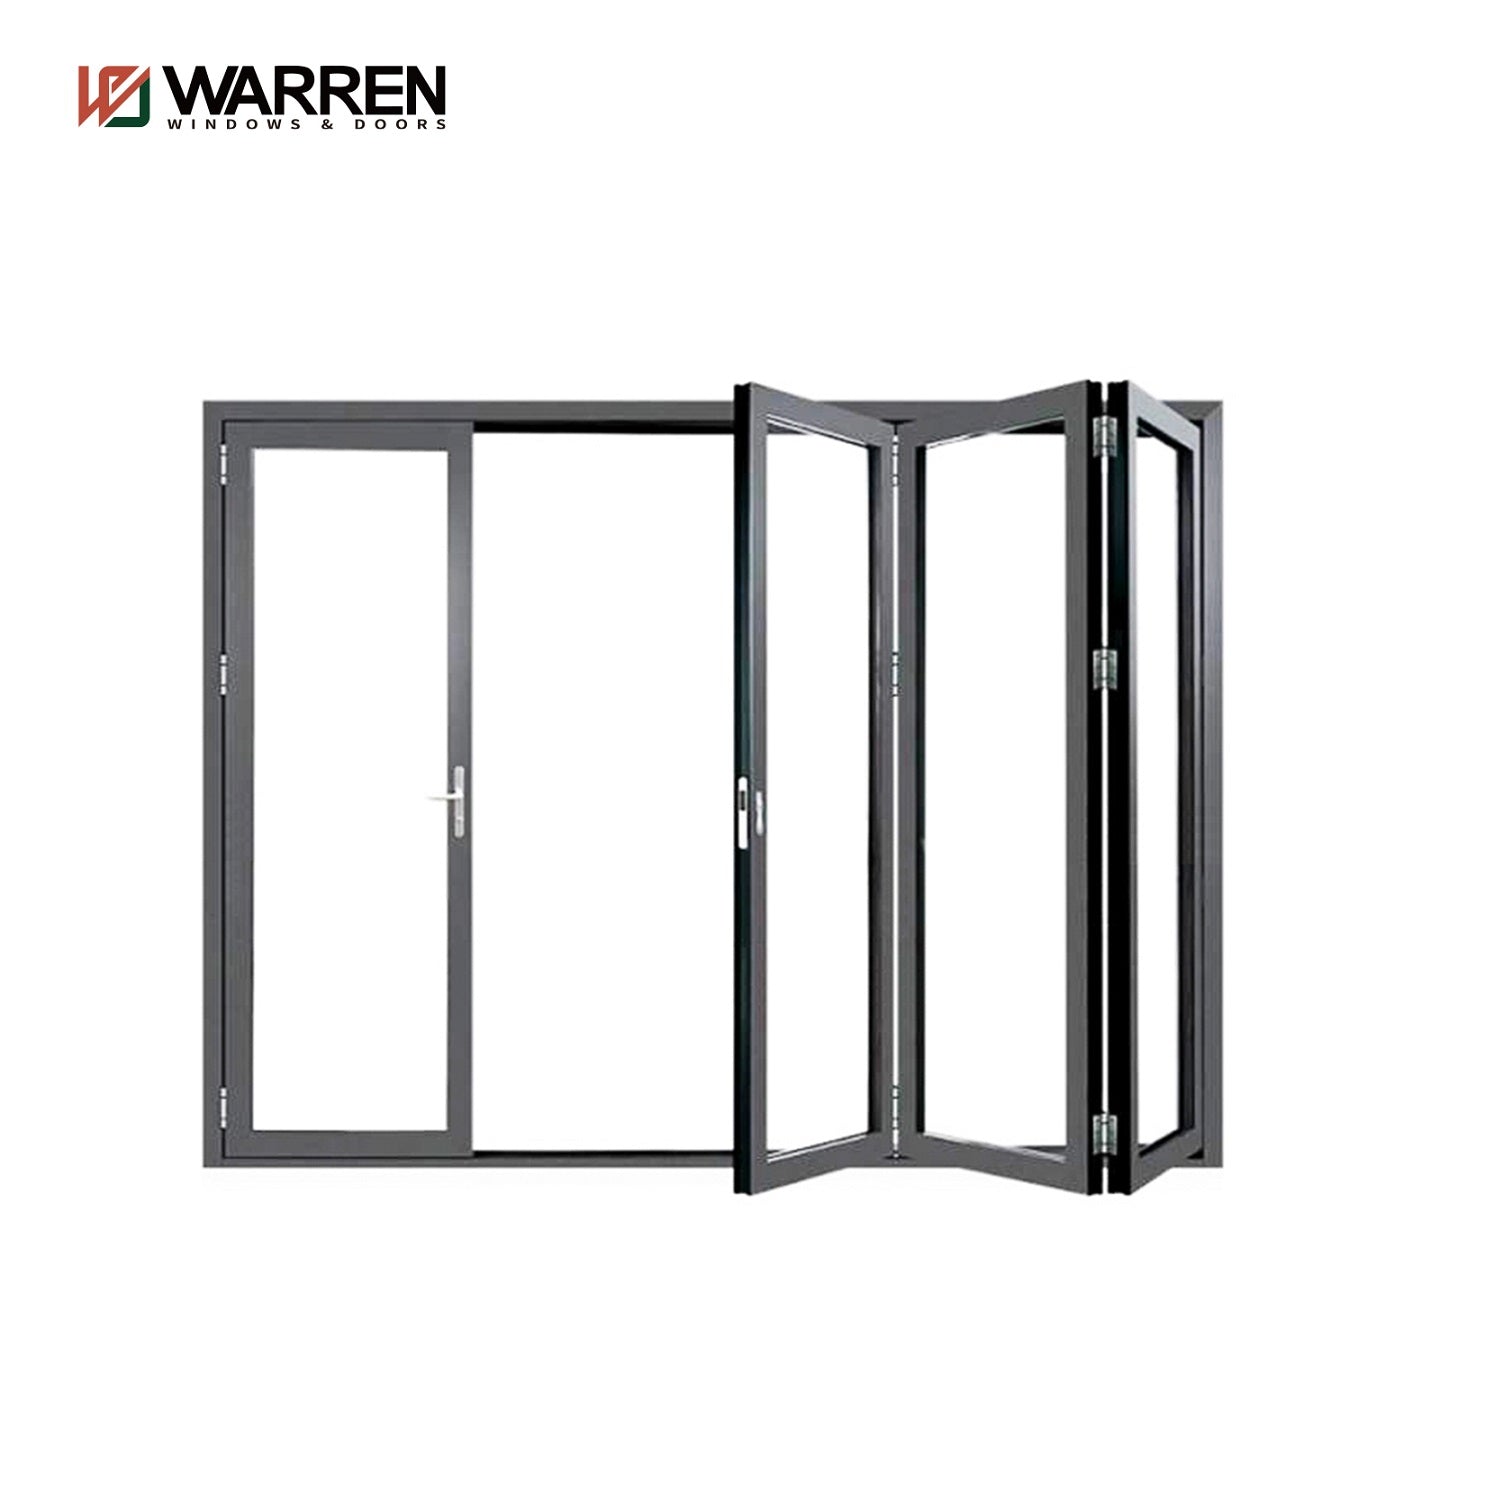 Warren 15foot Bi-Fold Door Exterior Folding Glass Door Accordion Glass Sliding Patio Doors